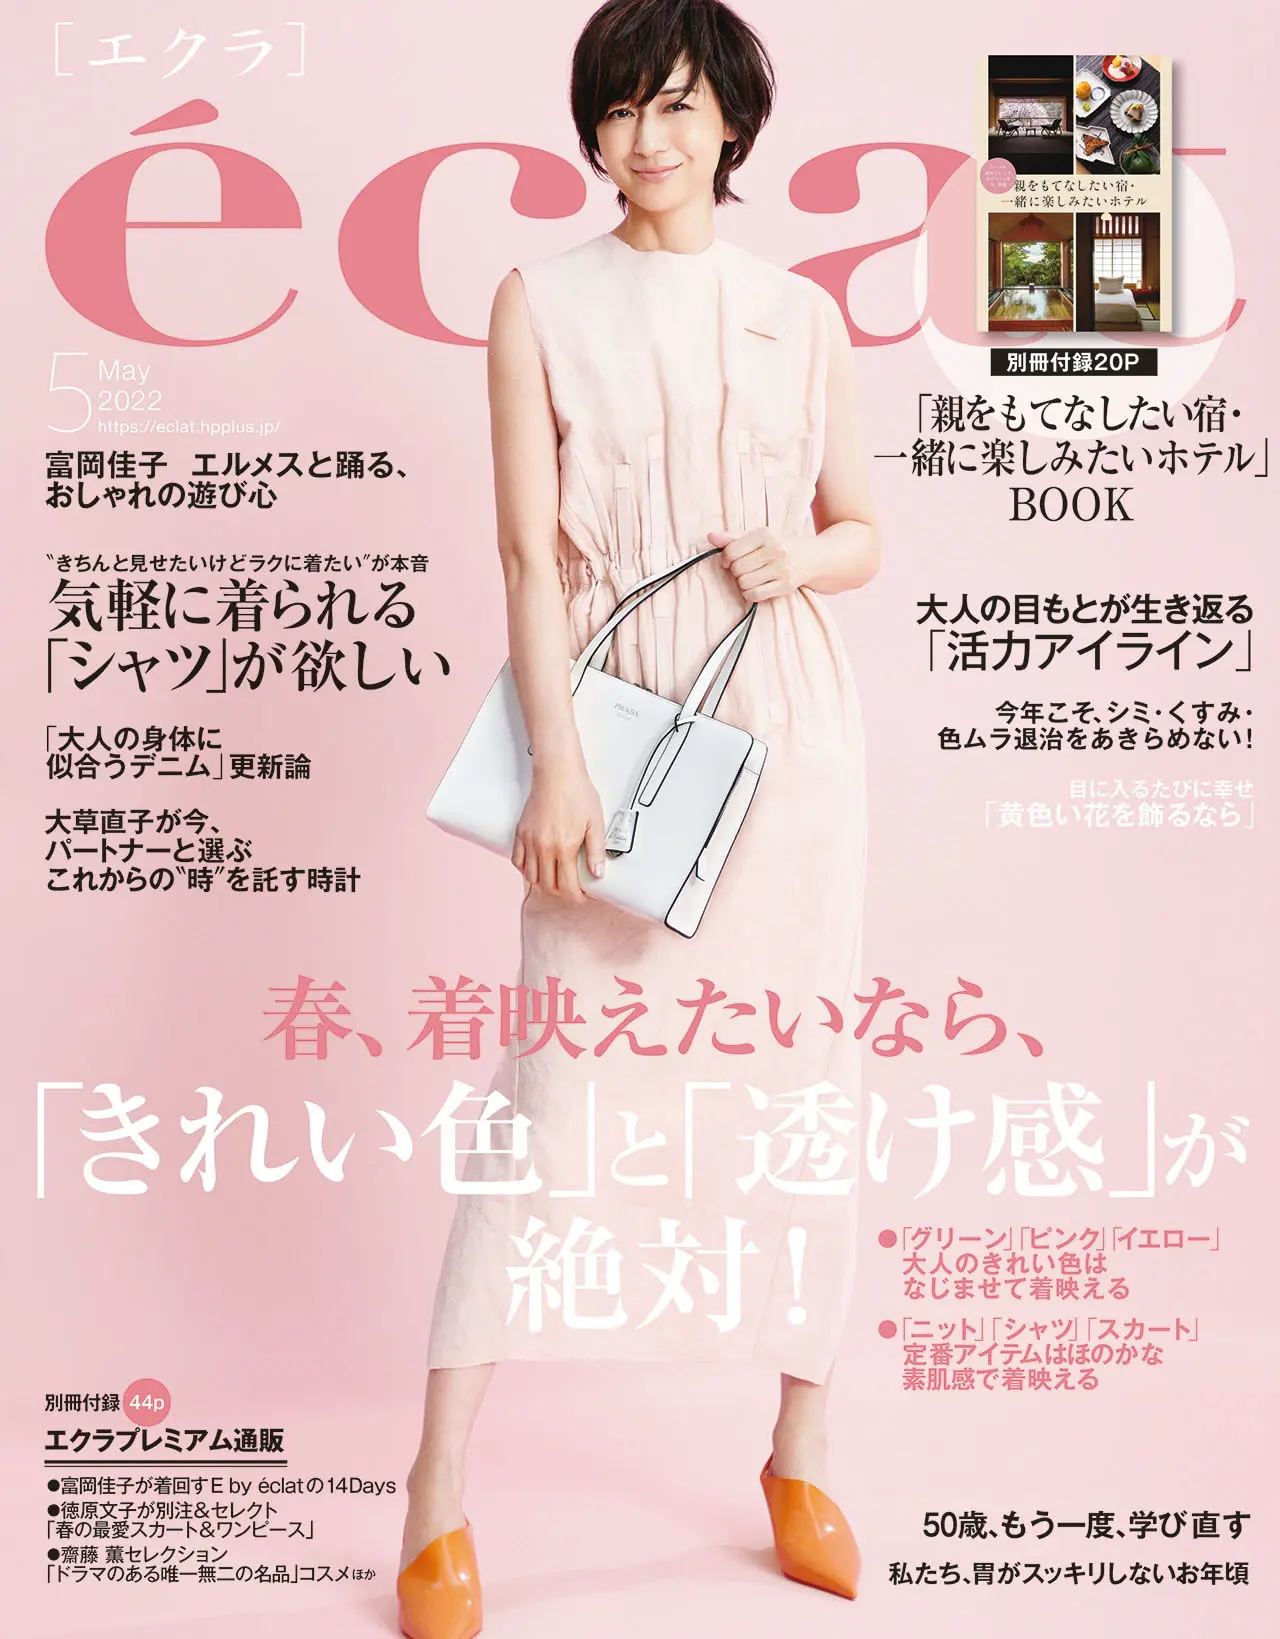 エクラ5月号表紙。カバーモデルは富岡佳子さん。